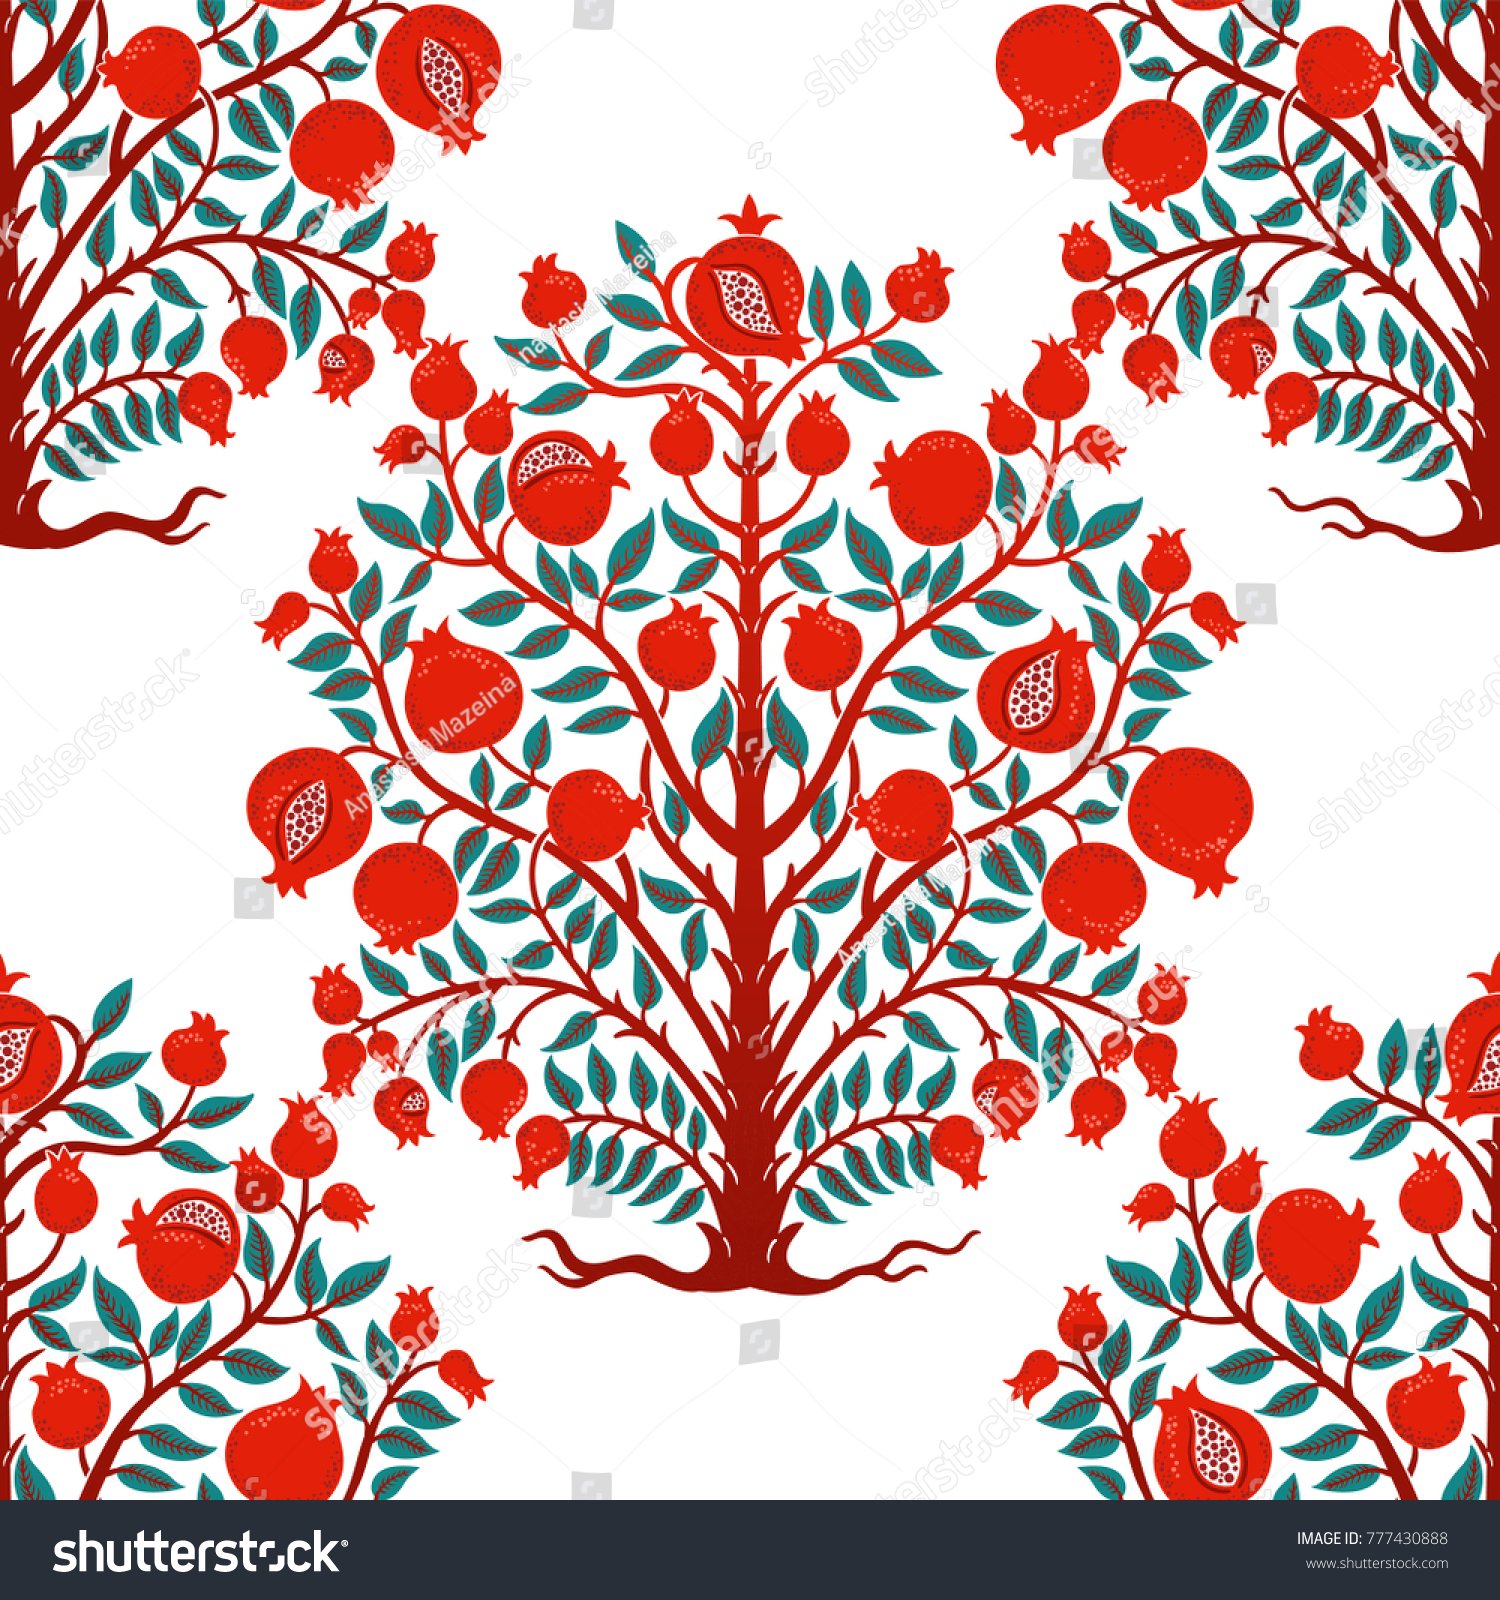 stock-vector-vintage-pomegranate-tree-vector-illustration-777430888.jpg